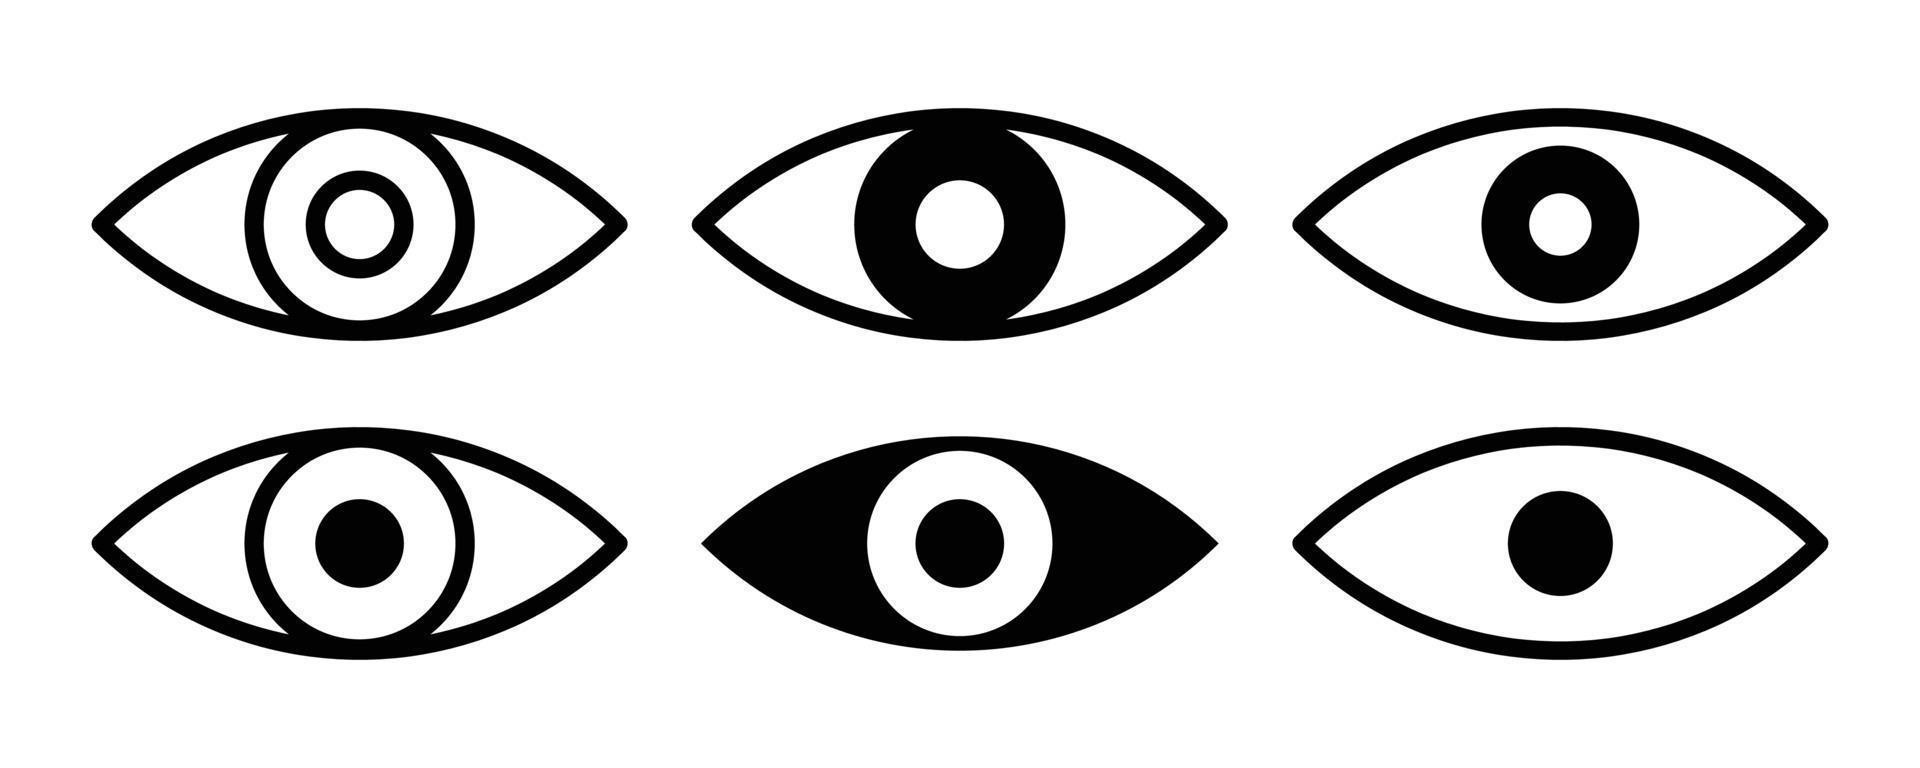 verschillende oogillustraties voor logo, pictogram of ontwerpelement vector